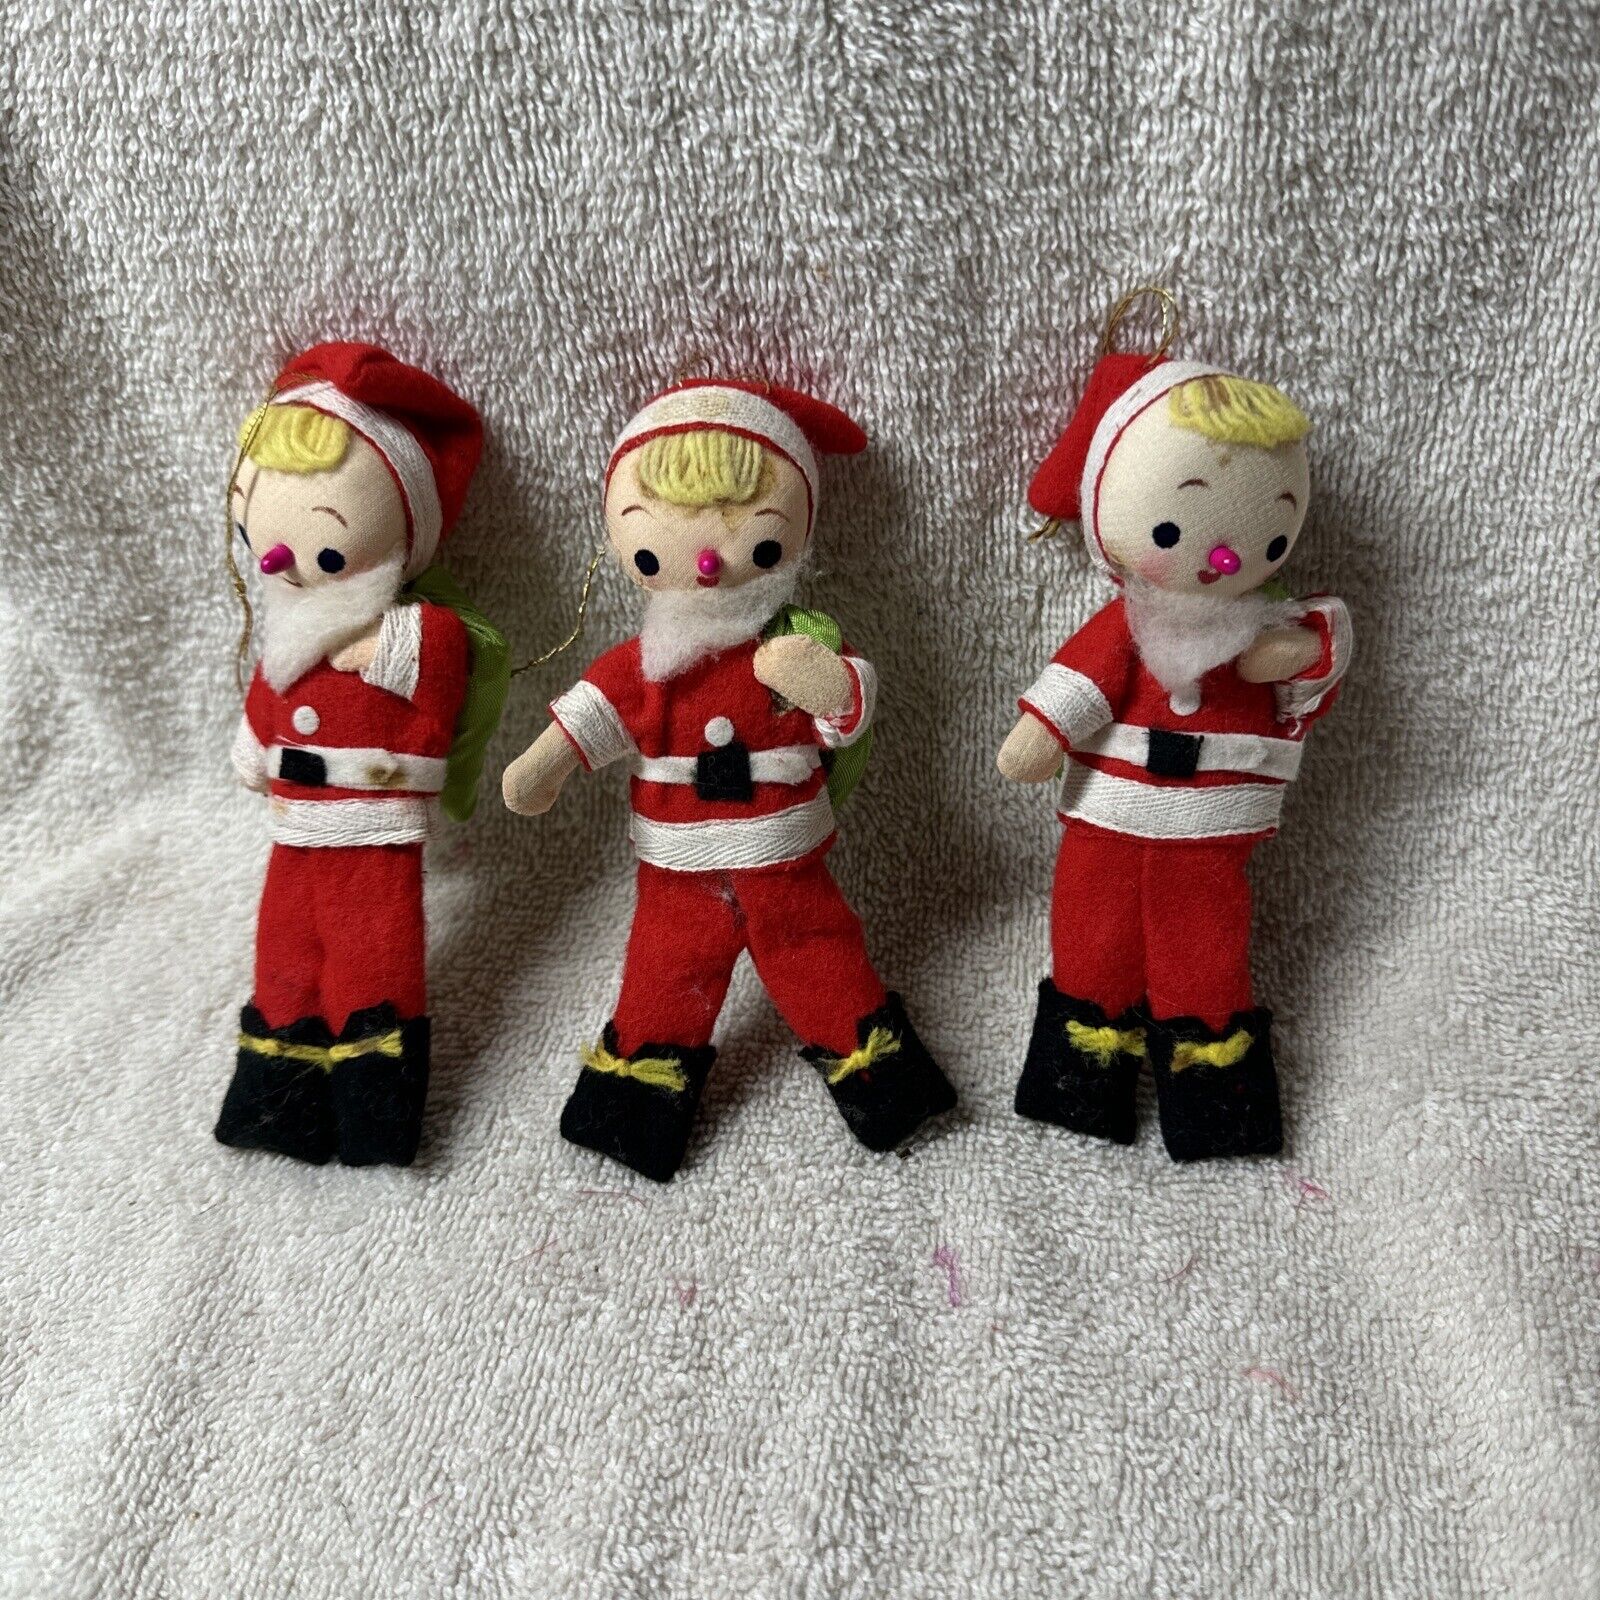 Vintage Nylon/Felt Santa Pixie Christmas Ornaments Lot 3 Japan L88